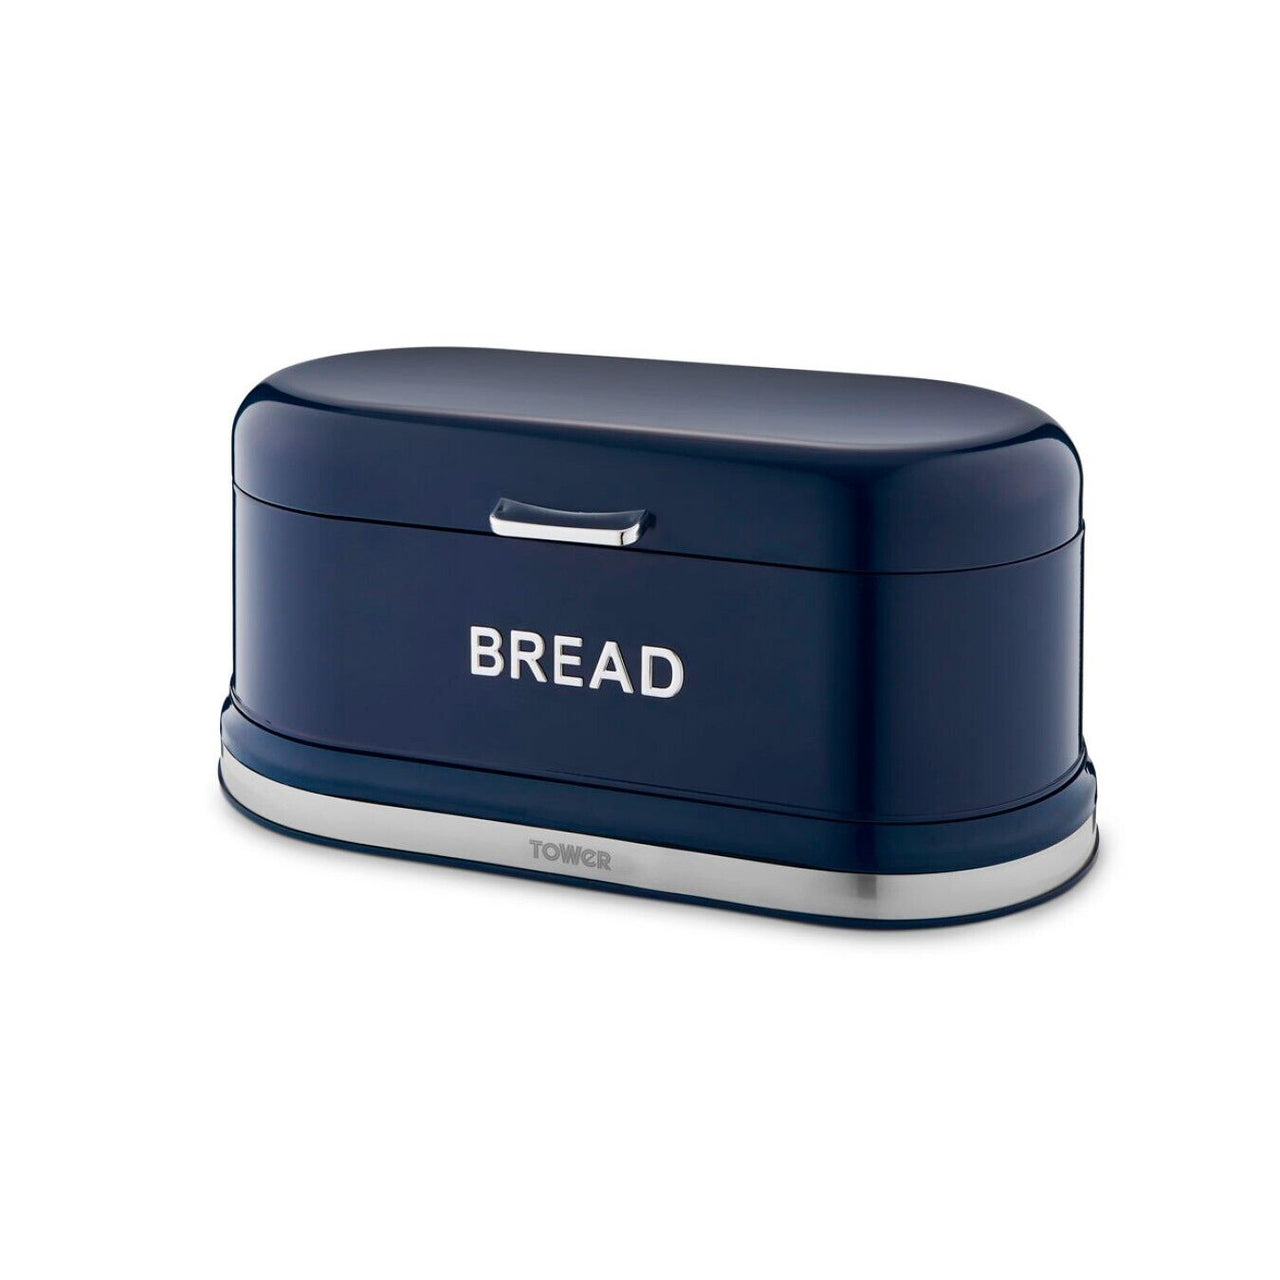 Tower Belle Bread Bin in Midnight Blue Stylish Kitchen Storage T826170MNB